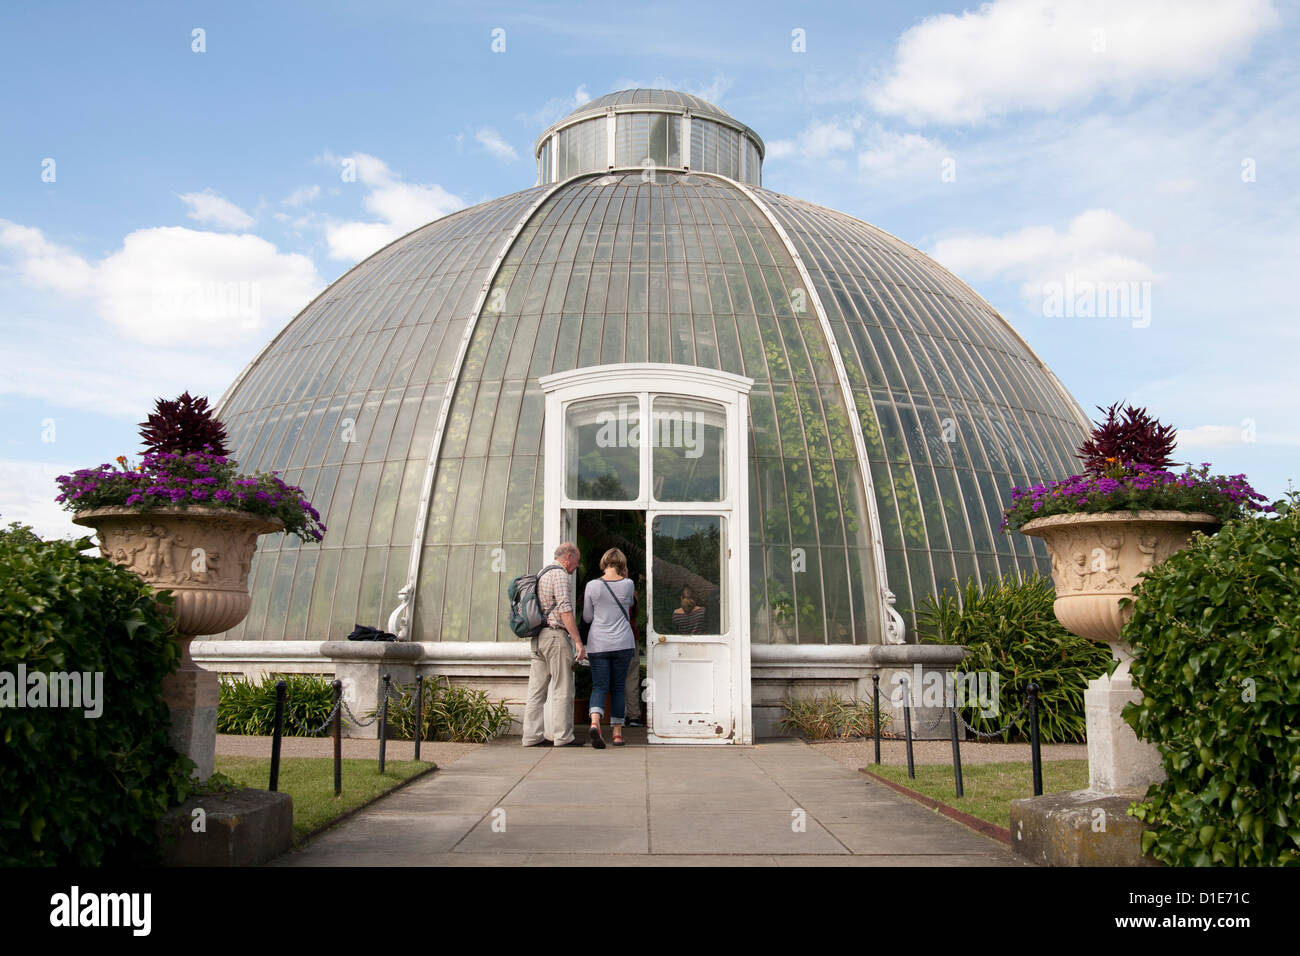 La Casa delle Palme Dome, Royal Botanic Gardens, Sito Patrimonio Mondiale dell'UNESCO, Kew, vicino a Richmond, Surrey, England, Regno Unito, Europa Foto Stock